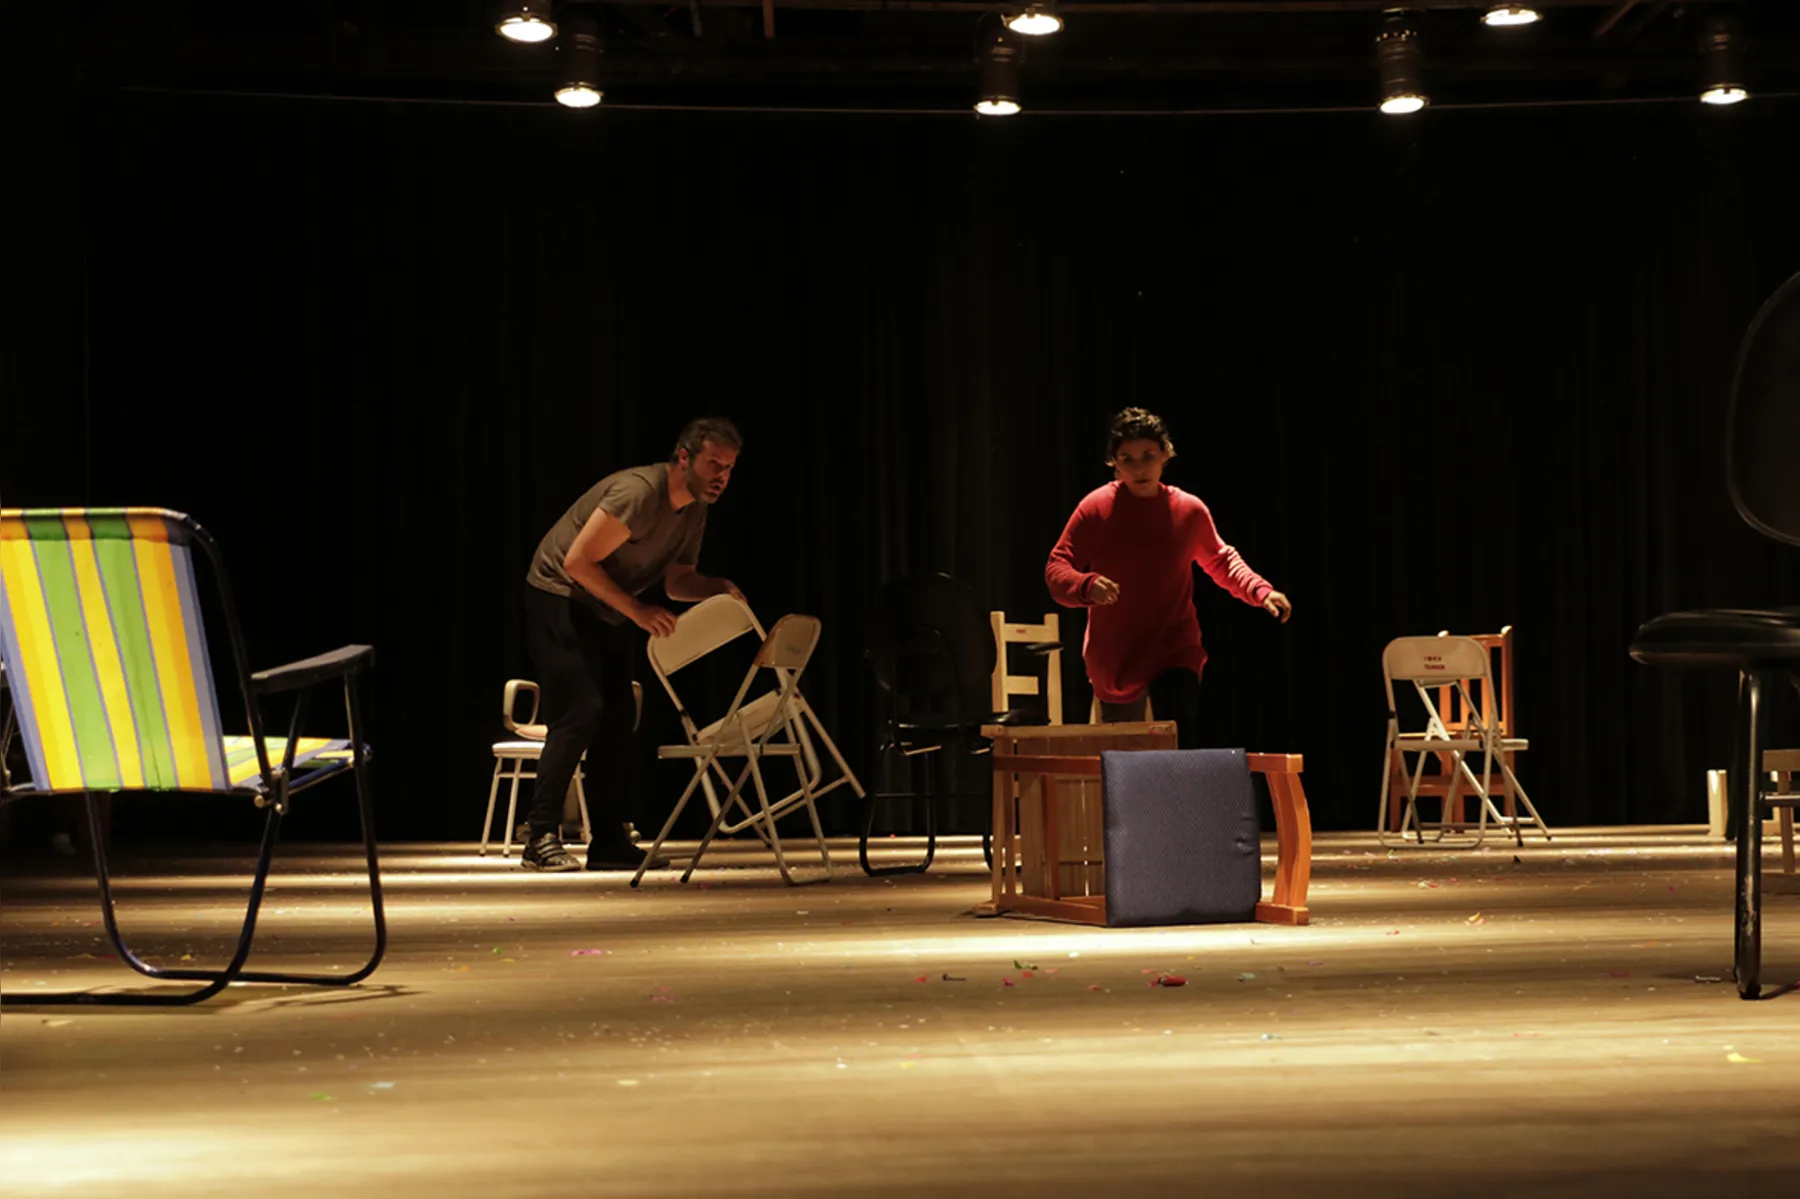 Em Levante!, os artistas empilham cadeiras, montam e desmontam a cena fazendo alusão às relações do corpo com o espaço e aos vínculos na convivência humana